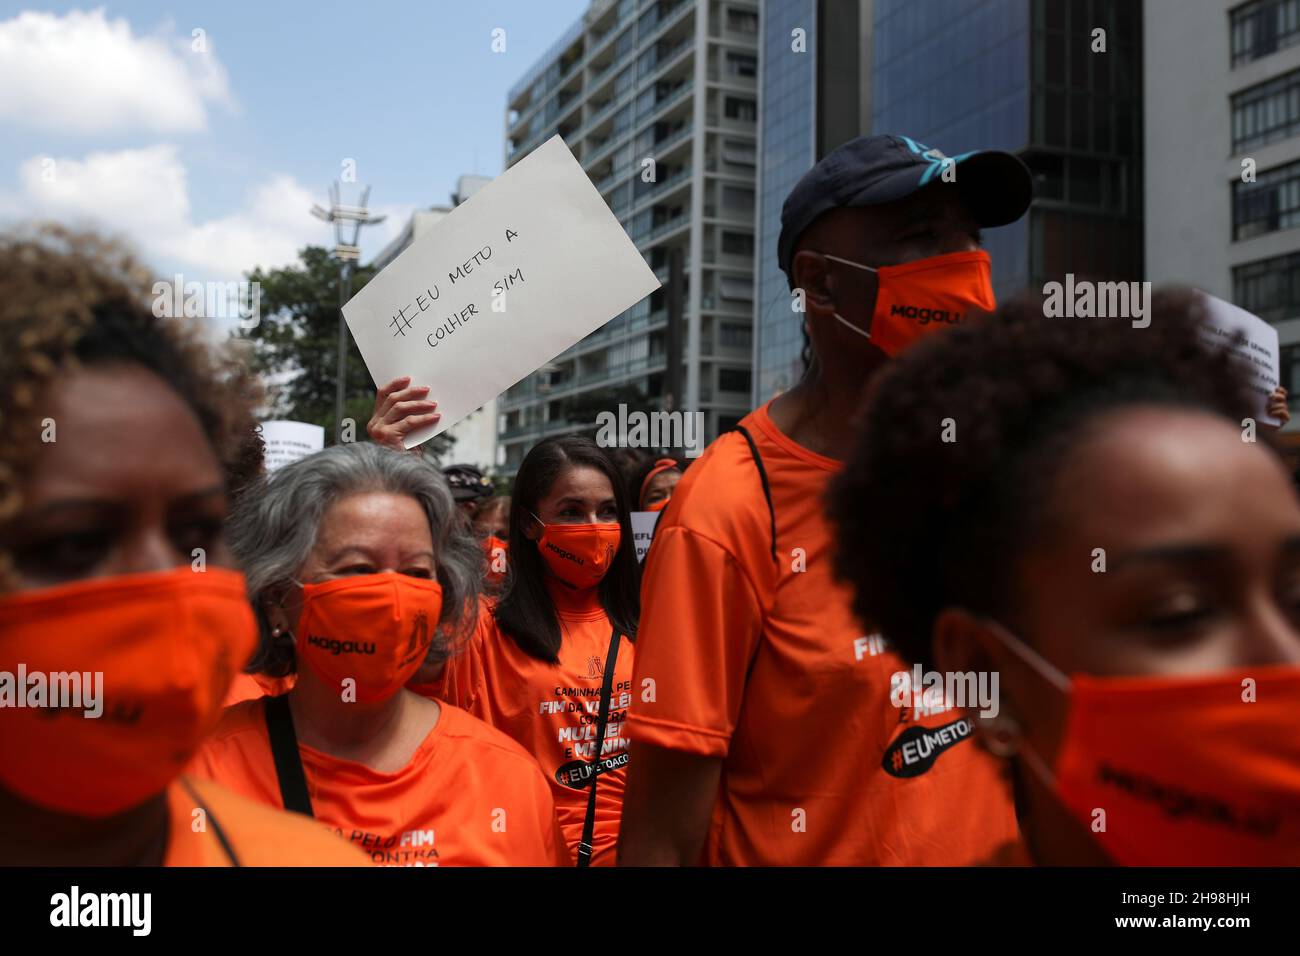 Une femme porte un signe qui se lit "Je mets la cuillère dans" se référant à intervenir entre le mari et la femme querelles, alors que les gens marchent pour exiger la fin de la violence contre les femmes, à Sao Paulo, Brésil décembre 5, 2021.REUTERS/Amanda Perobelli Banque D'Images